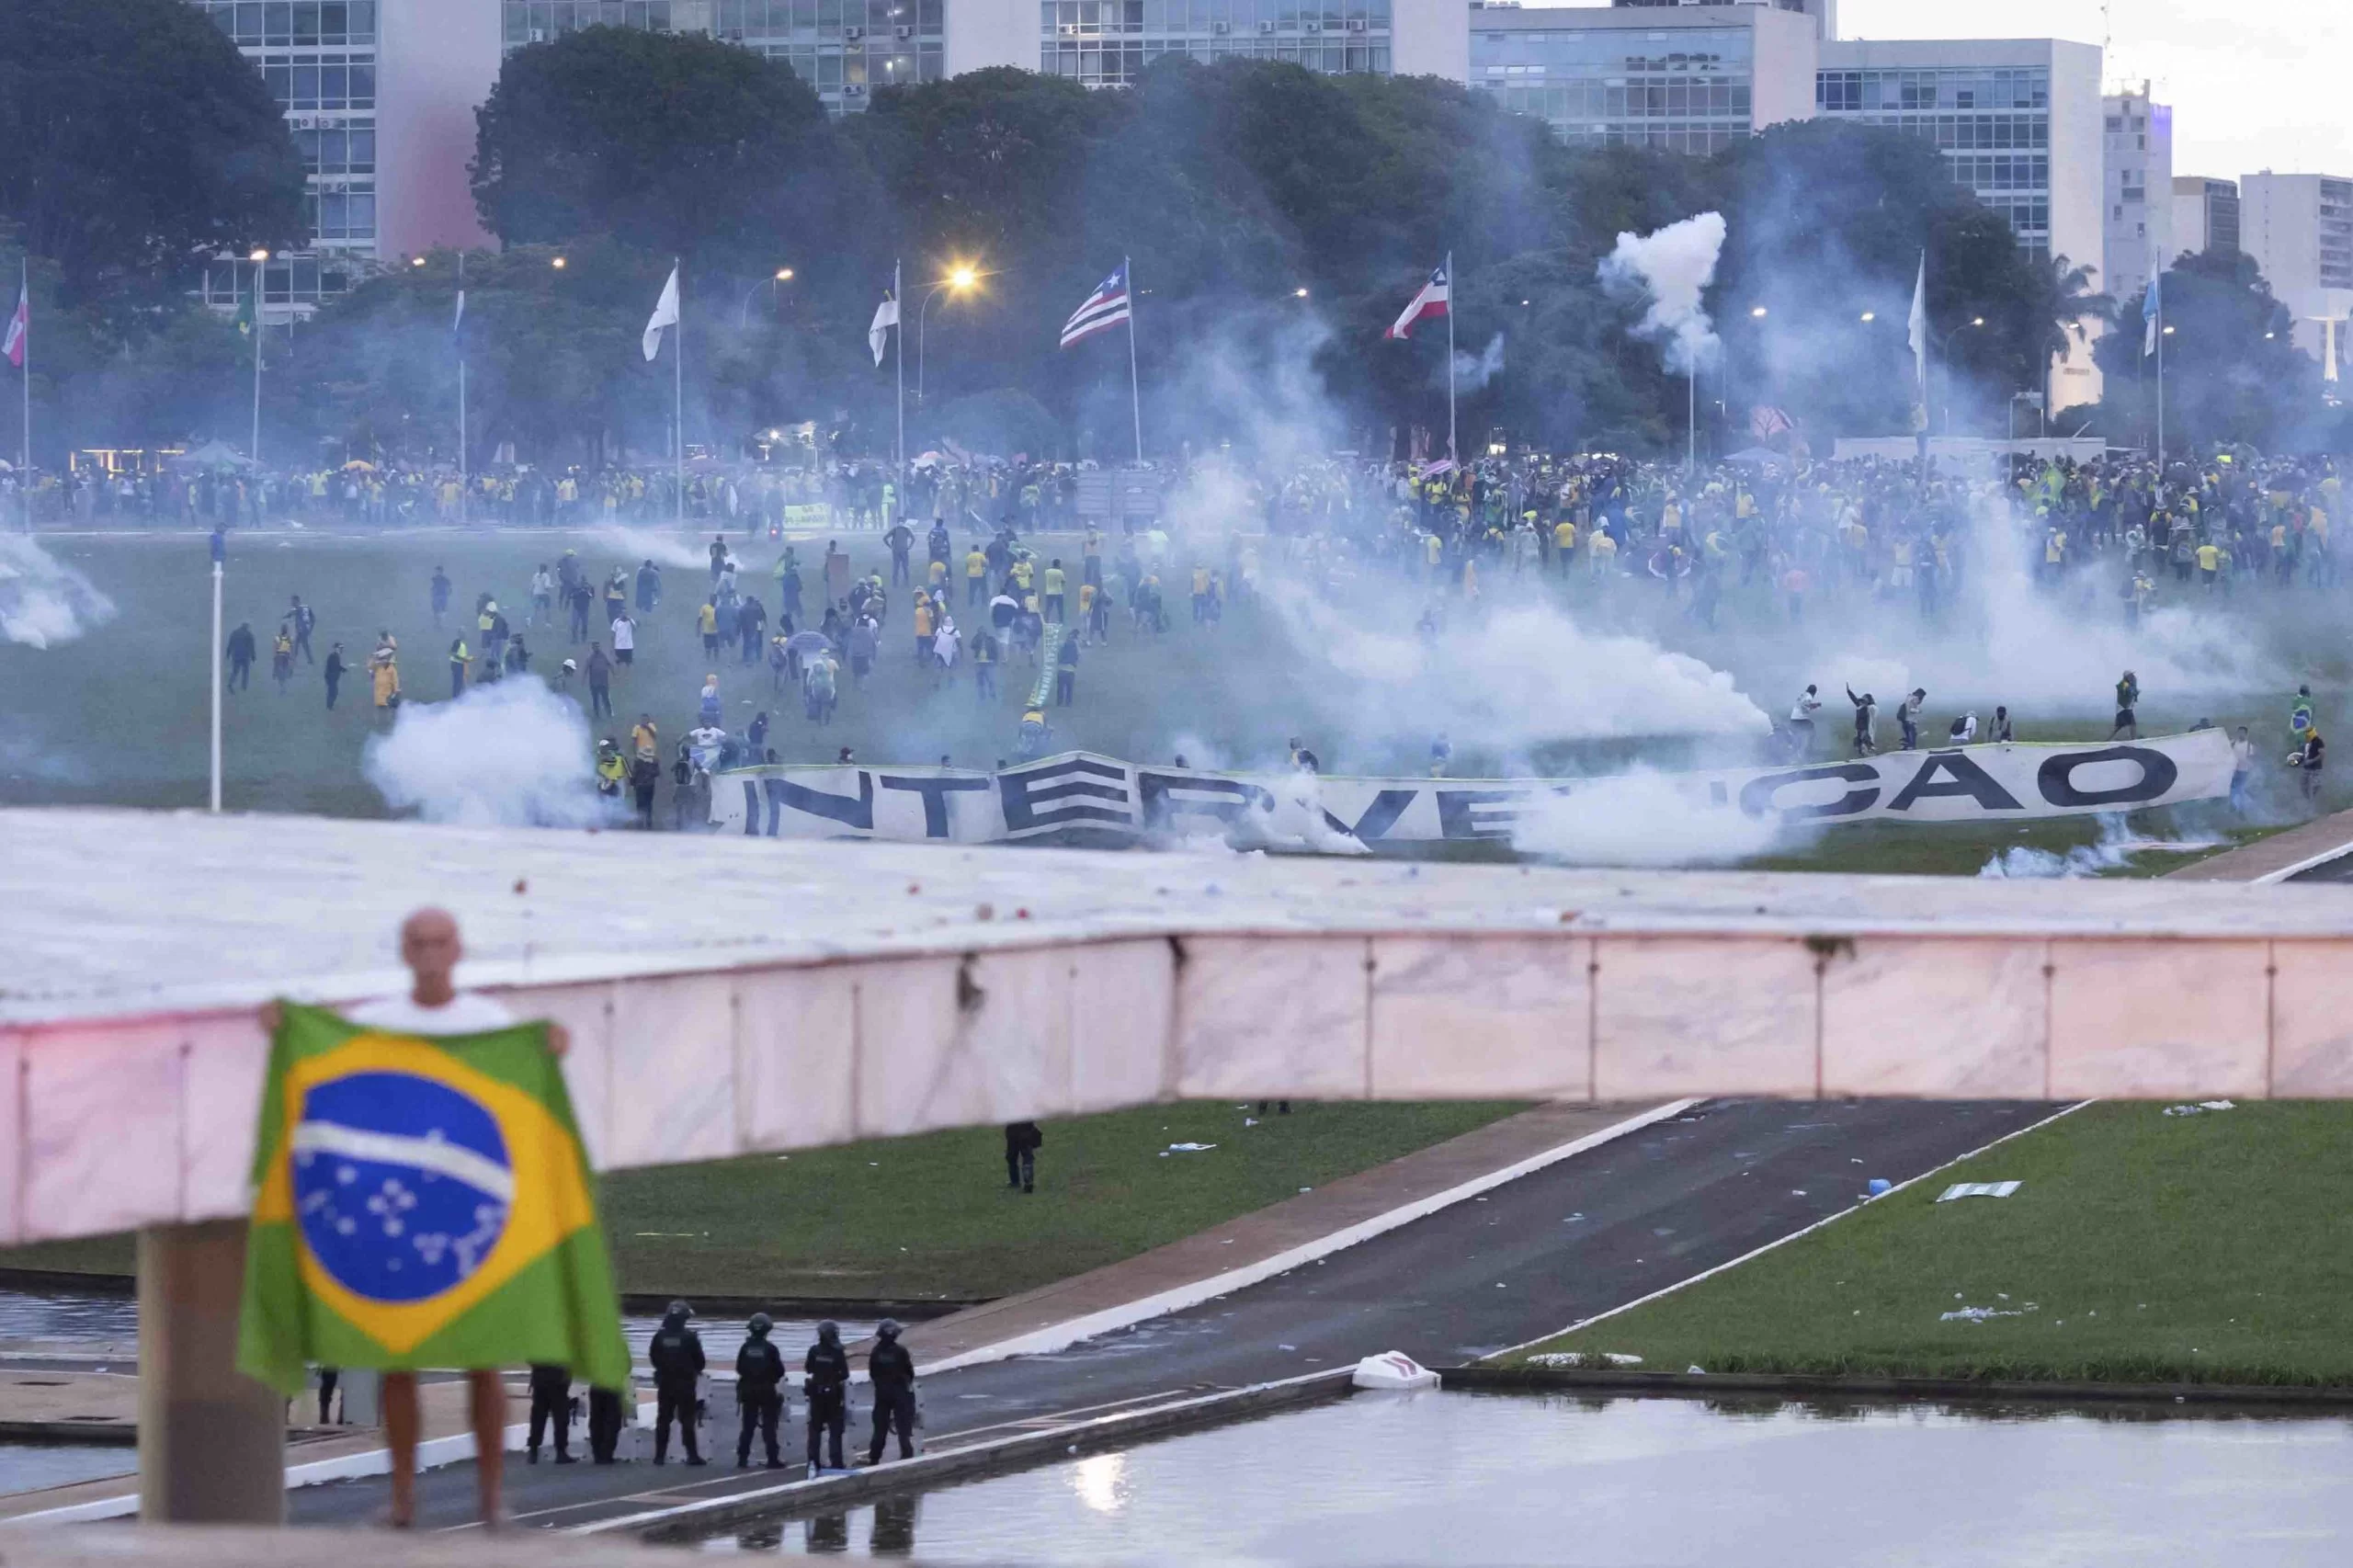 Retrato da intolerância criminosa de parte dos "Bolsonaristas" revoltados com o resultado democrático da Eleição Presidencial.